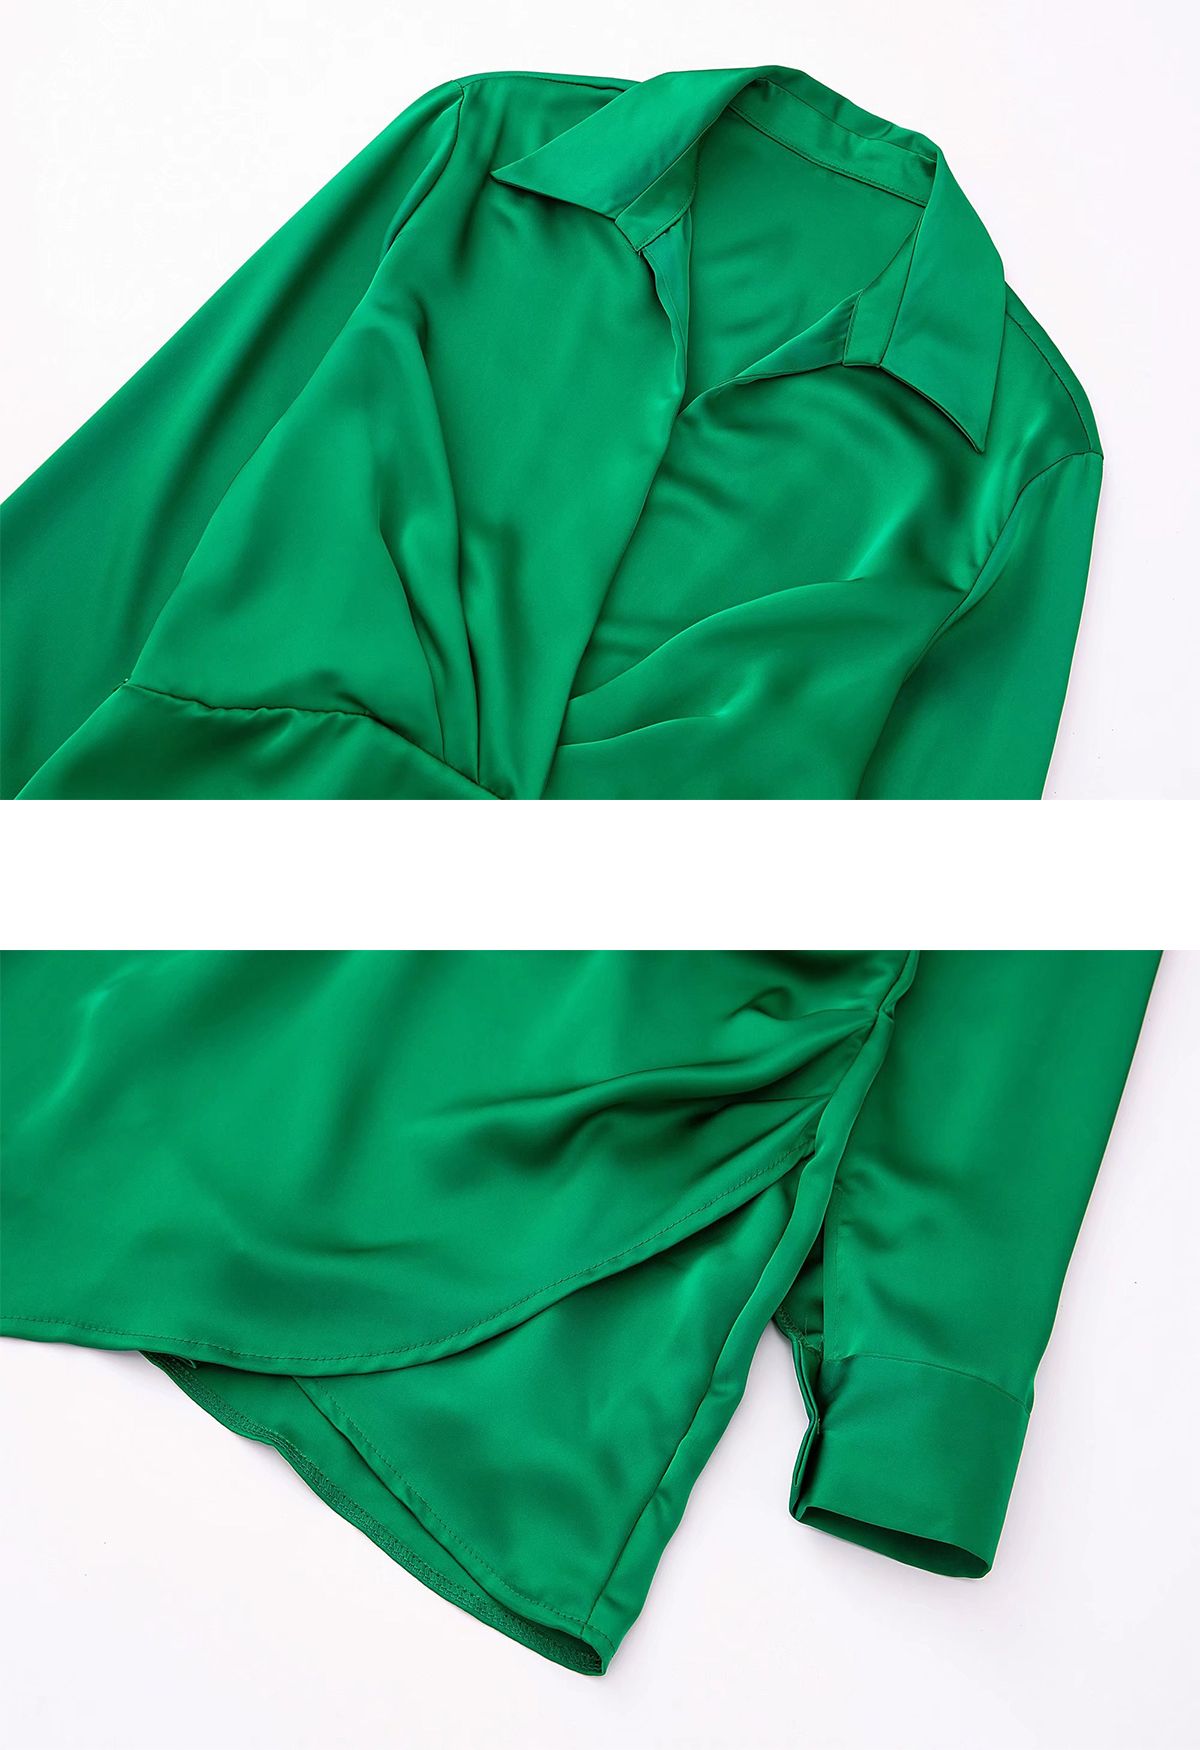 Vestido de camisa de cetim com decote em V franzido na frente em verde